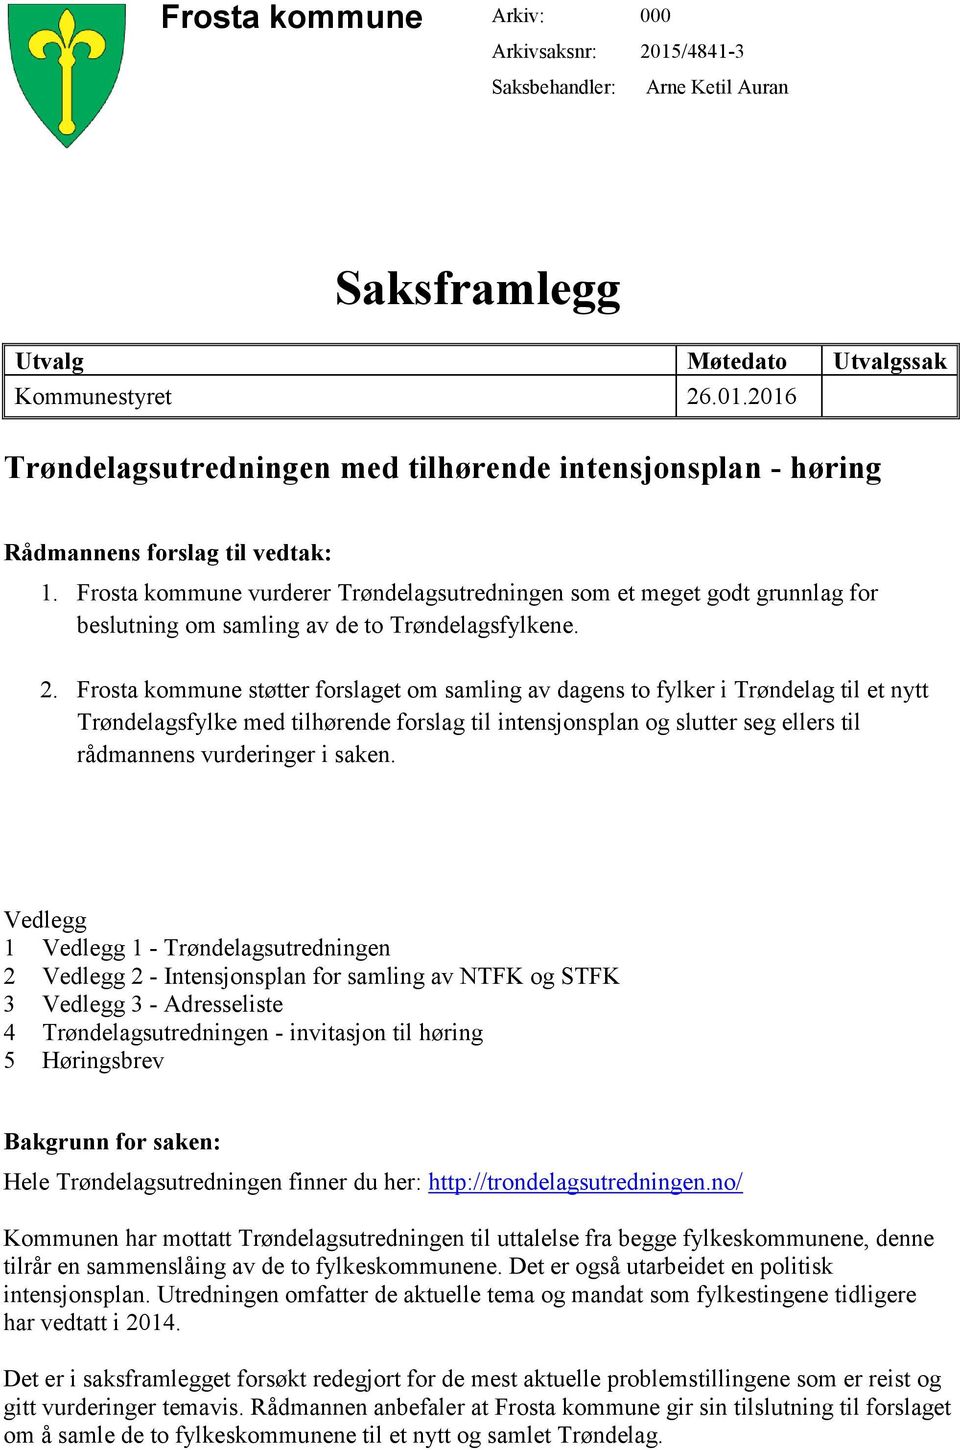 Frosta kommune støtter forslaget om samling av dagens to fylker i Trøndelag til et nytt Trøndelagsfylke med tilhørende forslag til intensjonsplan og slutter seg ellers til rådmannens vurderinger i